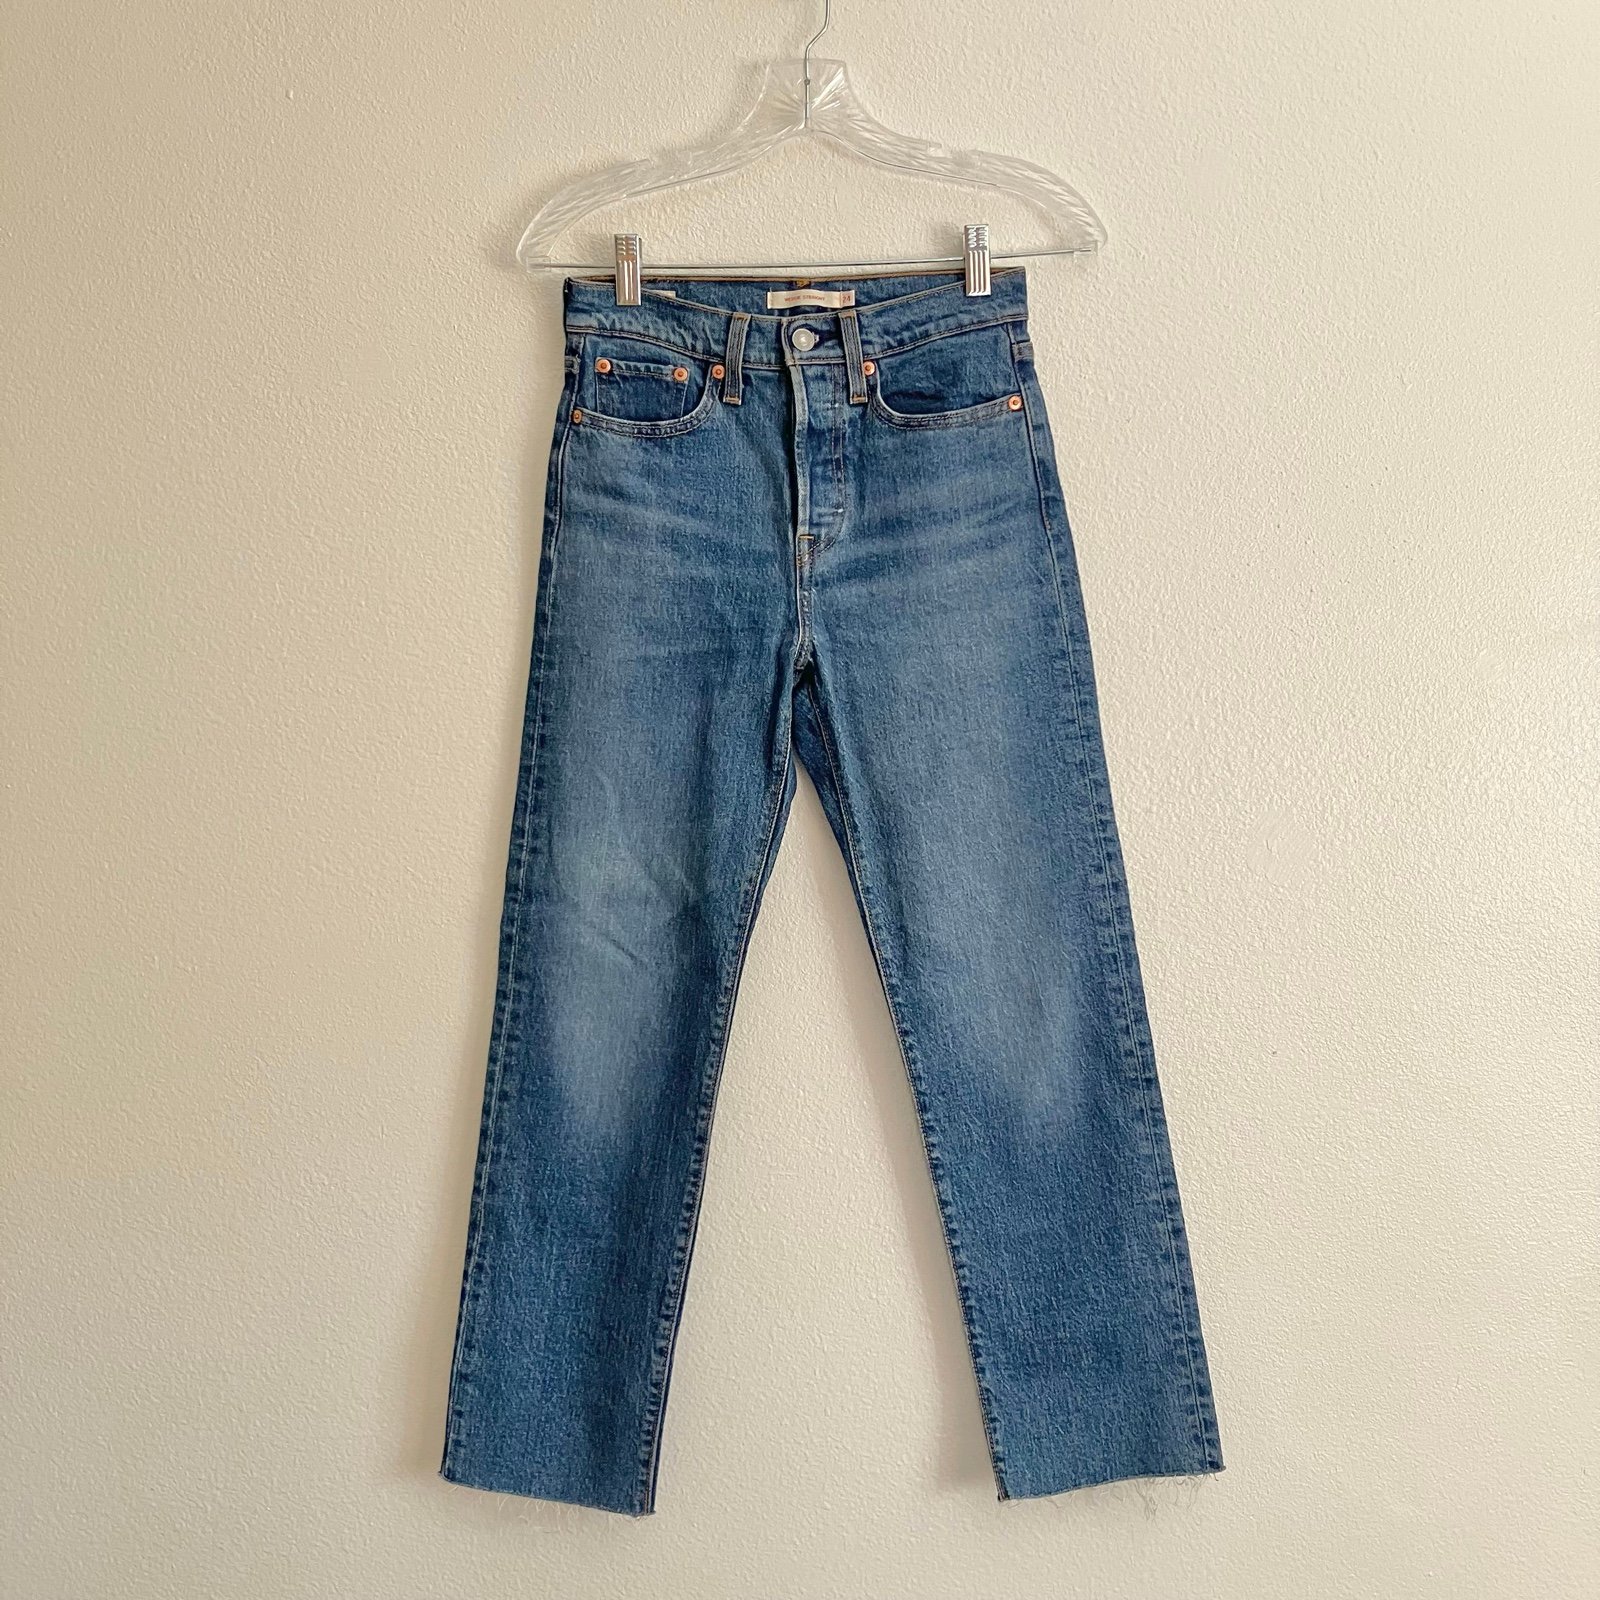 Exclusive Levi’s Wedgie Straight Medium Wash Denim Jean